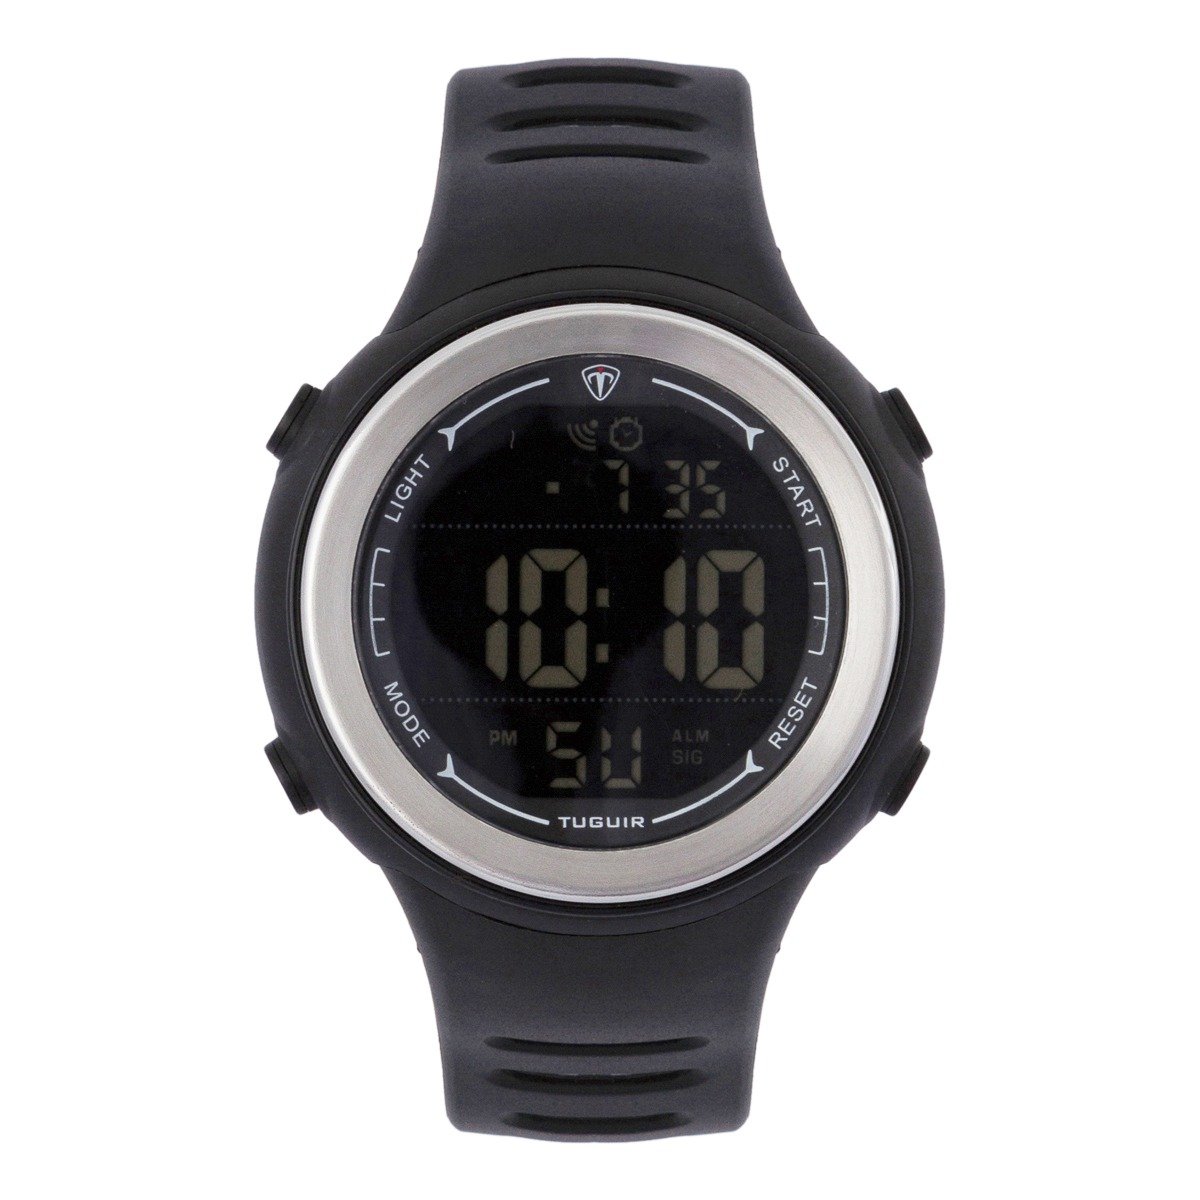 Relógio Masculino Tuguir Digital TG123 - Preto e Prata Preto 1